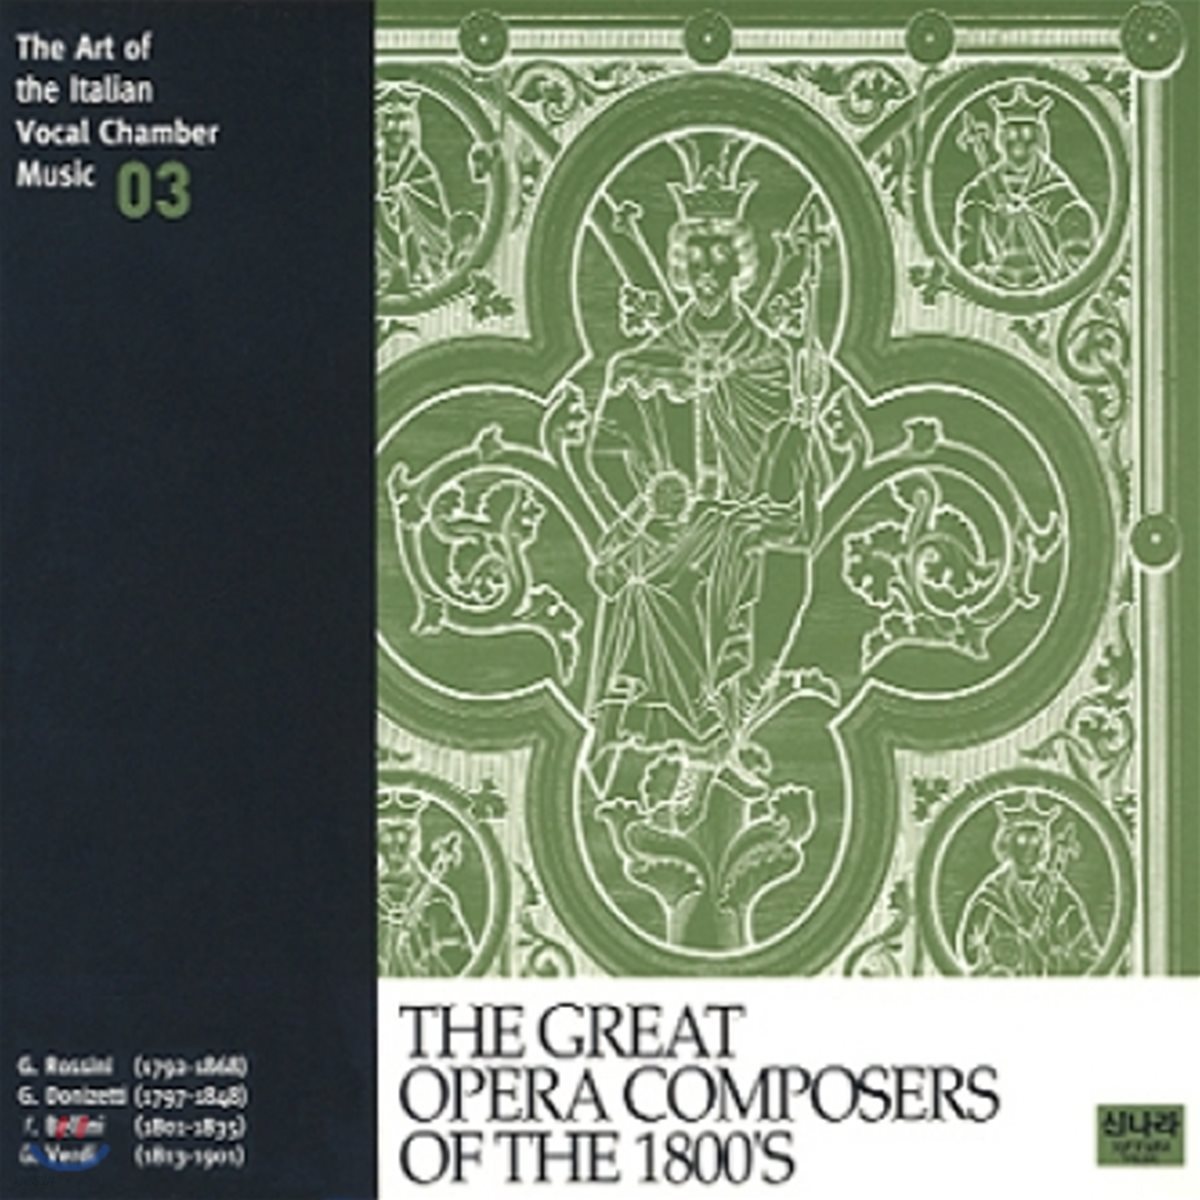 이태리 실내 성악 선집 3 - 1800년대 위대한 오페라 작곡가들 (The Art of the Italian Vocal Chamber Music 3 - The Great Opera Composers of the 1800's)